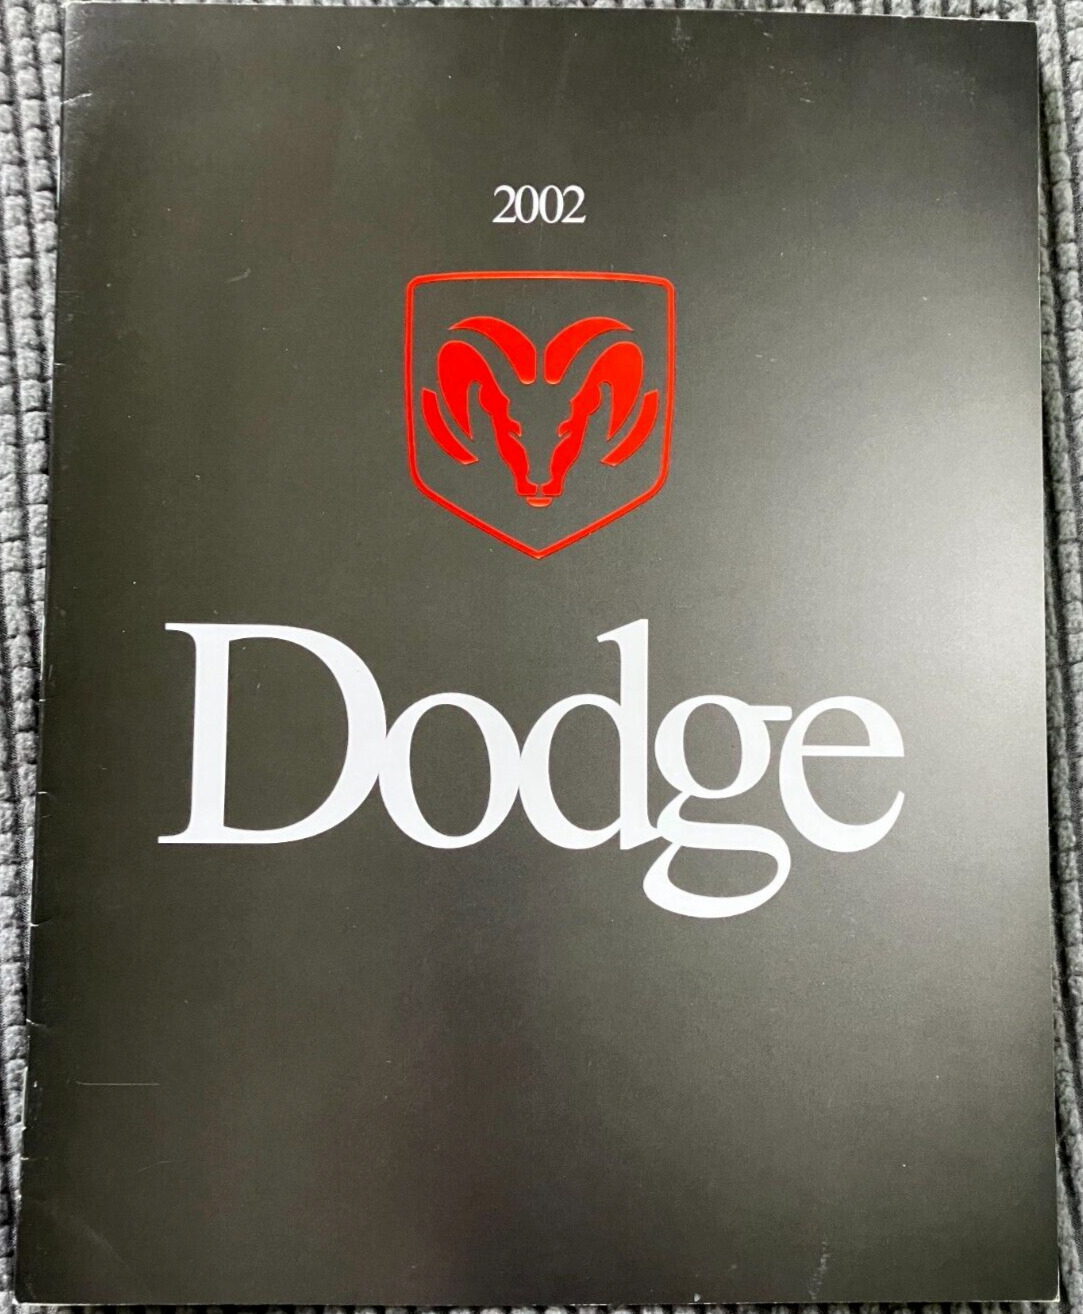 2002 Dodge Model Range - Vintage Original 22-Page Dealer Sales Brochure - MINT